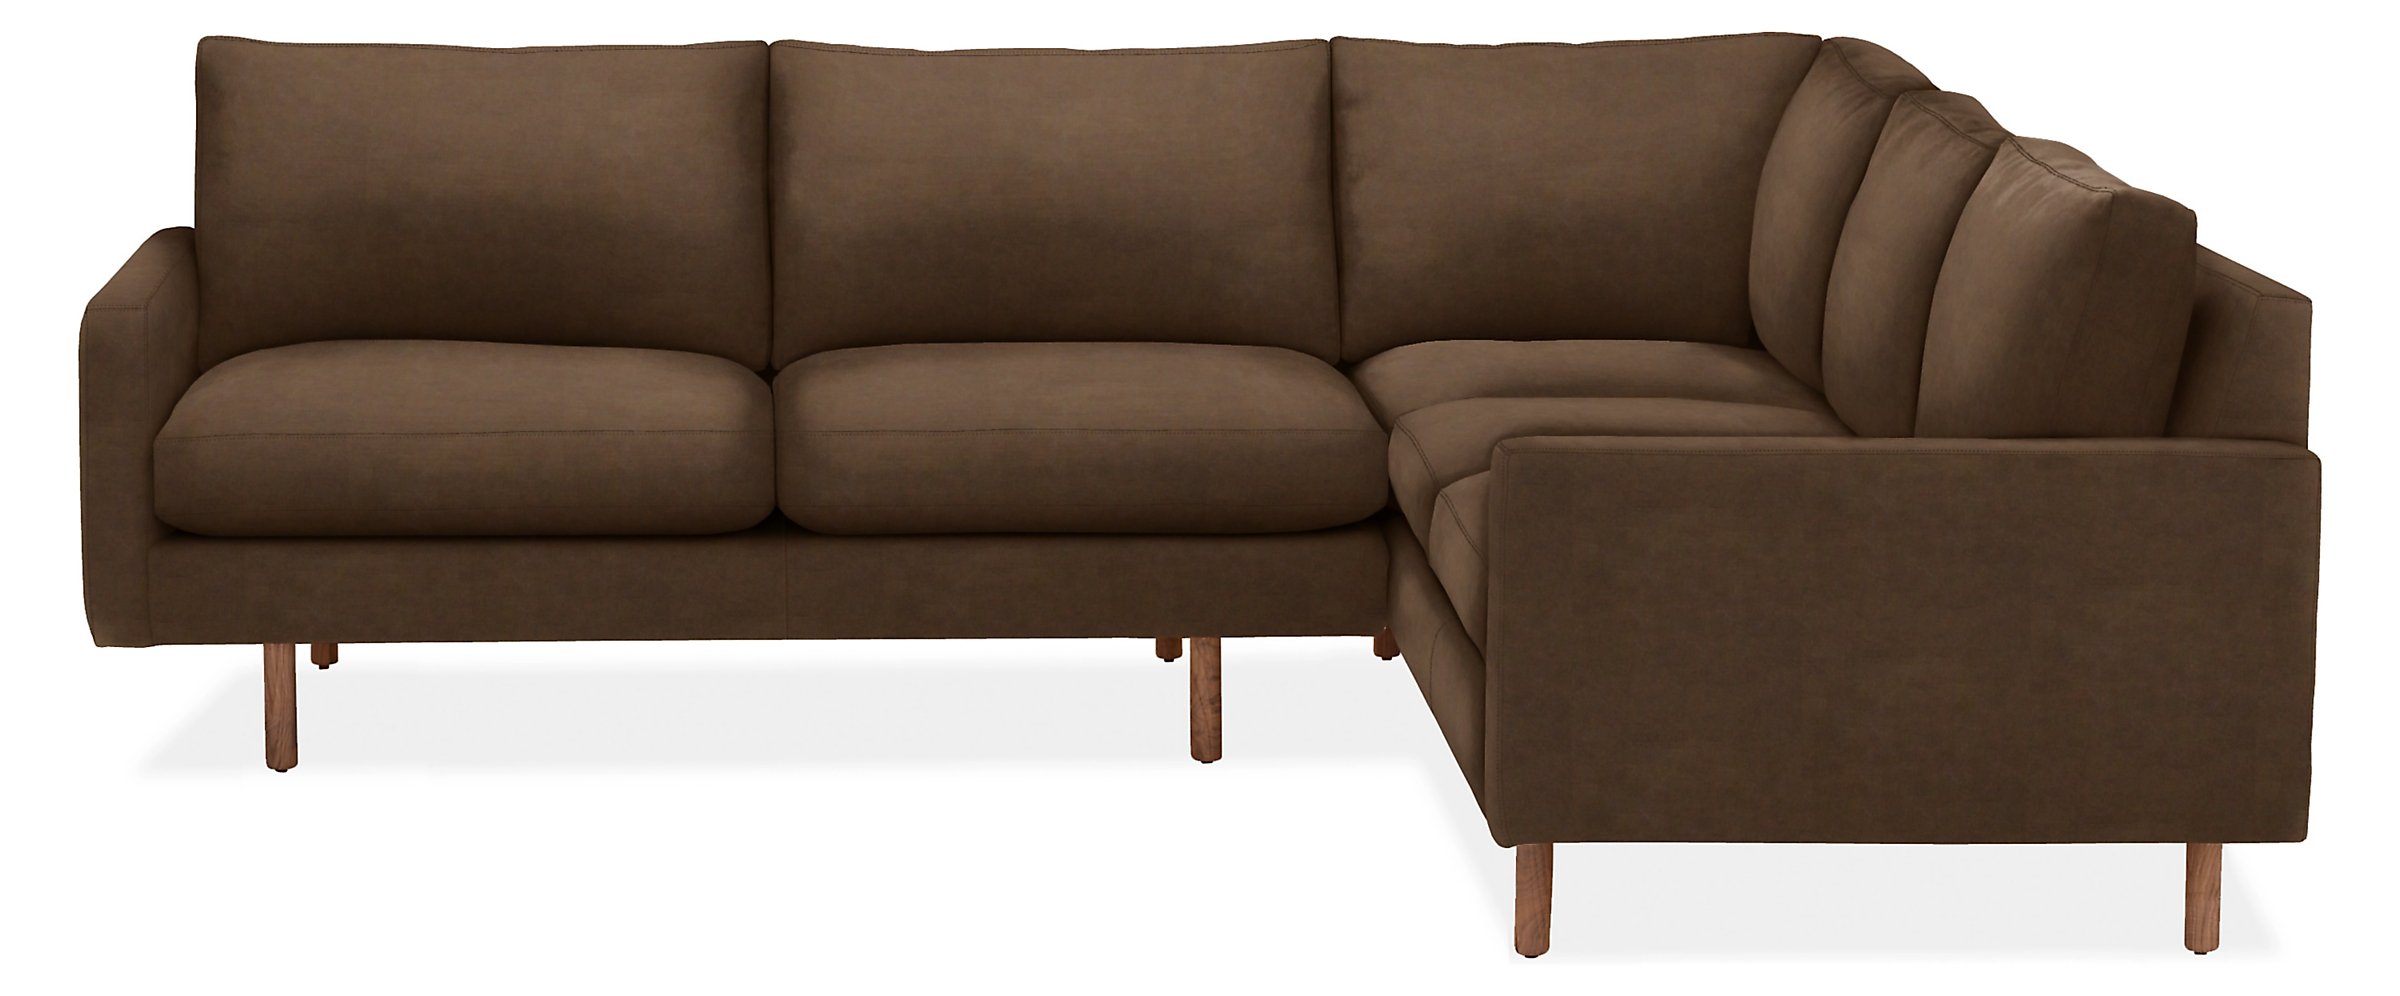 Jasper 92x91" Two-Piece w/Right-Arm Corner Sofa in View Walnut with Walnut Legs